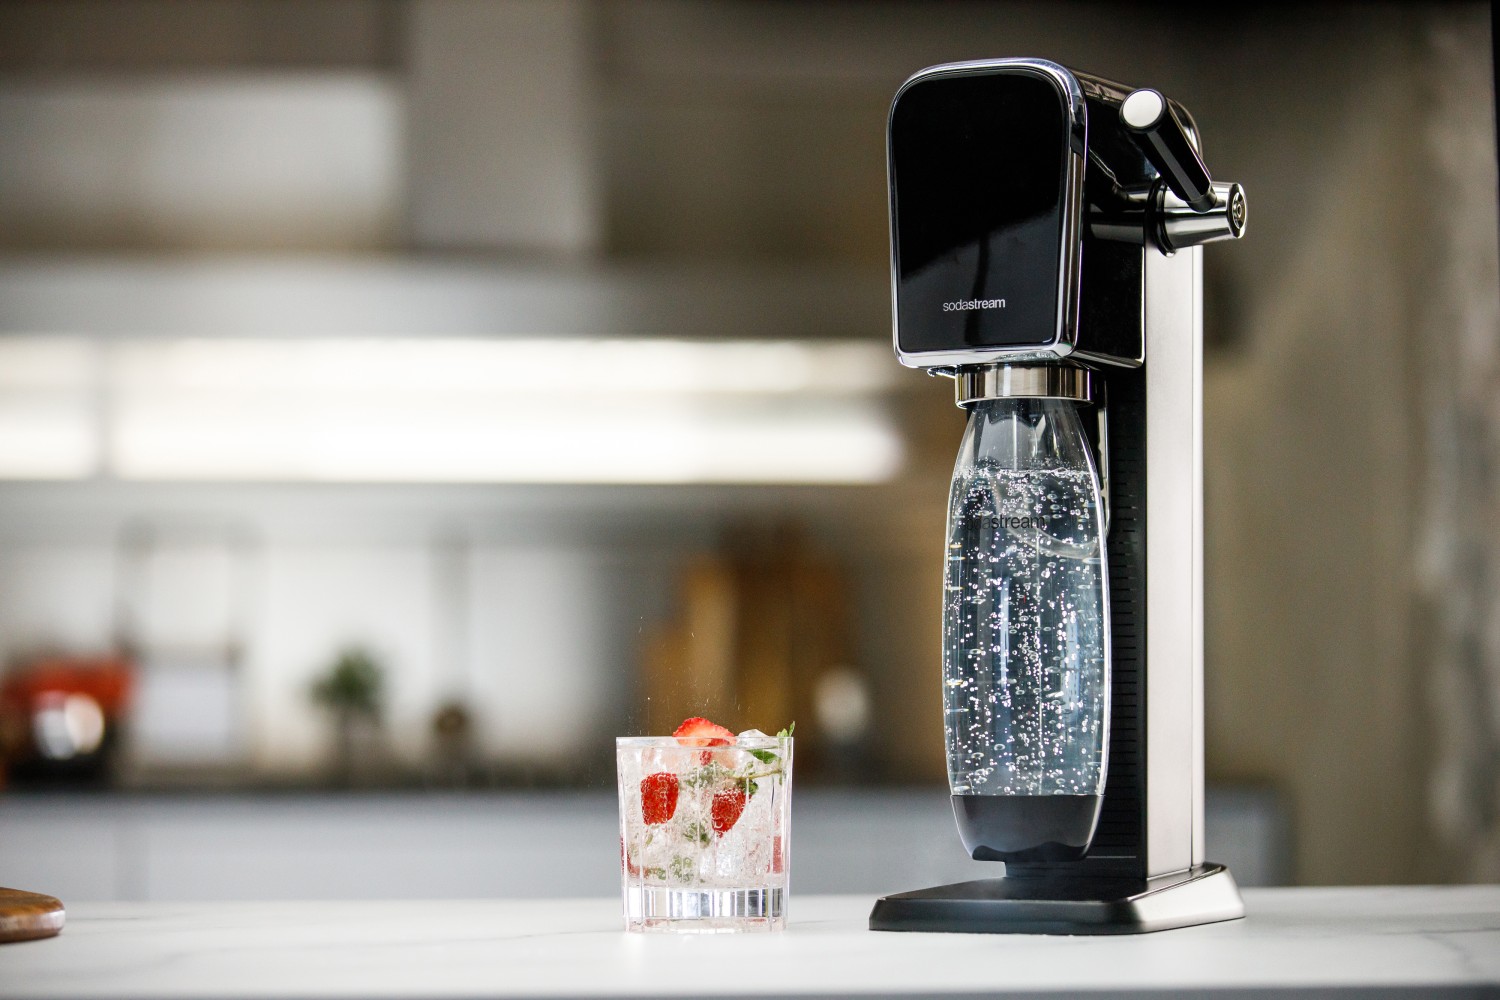 Haushaltsgeräte Sodastream Art: Frisches Mineralwasser über pfiffigen Hebel - News, Bild 2